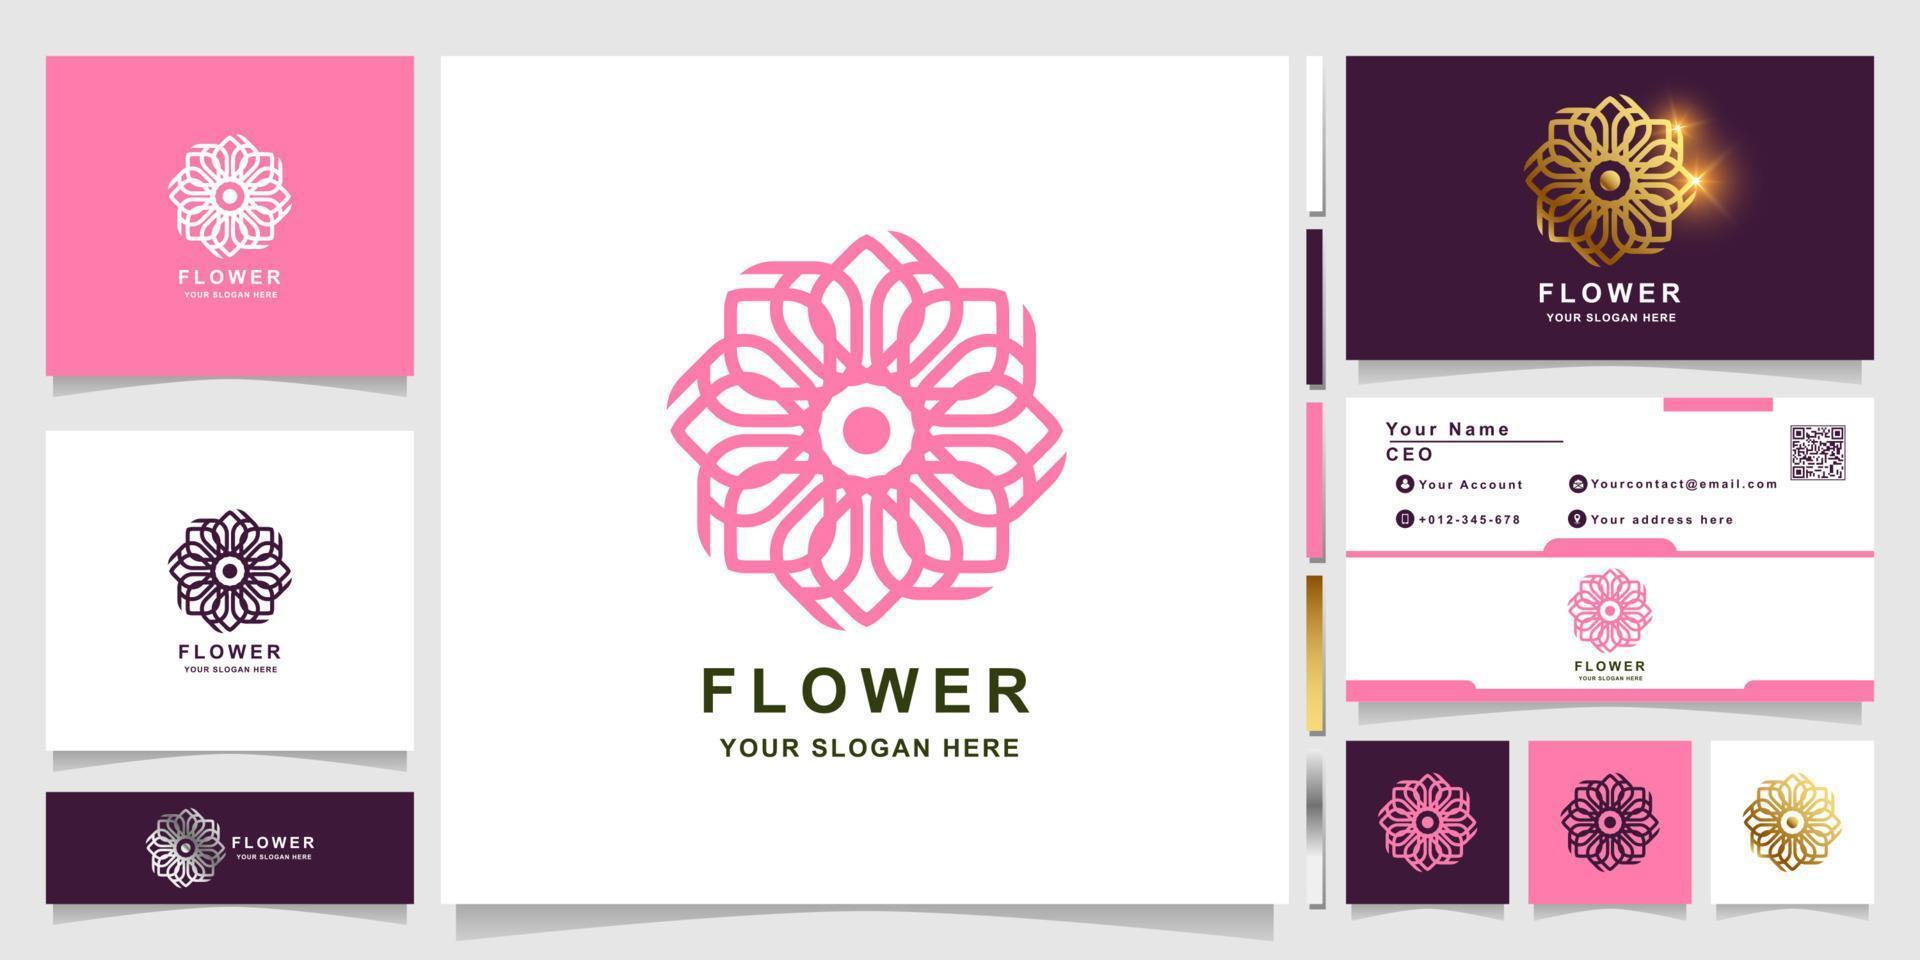 blomma, boutique eller prydnad logotyp mall med visitkort design. kan användas spa, salong, skönhet eller boutique logotyp design. vektor